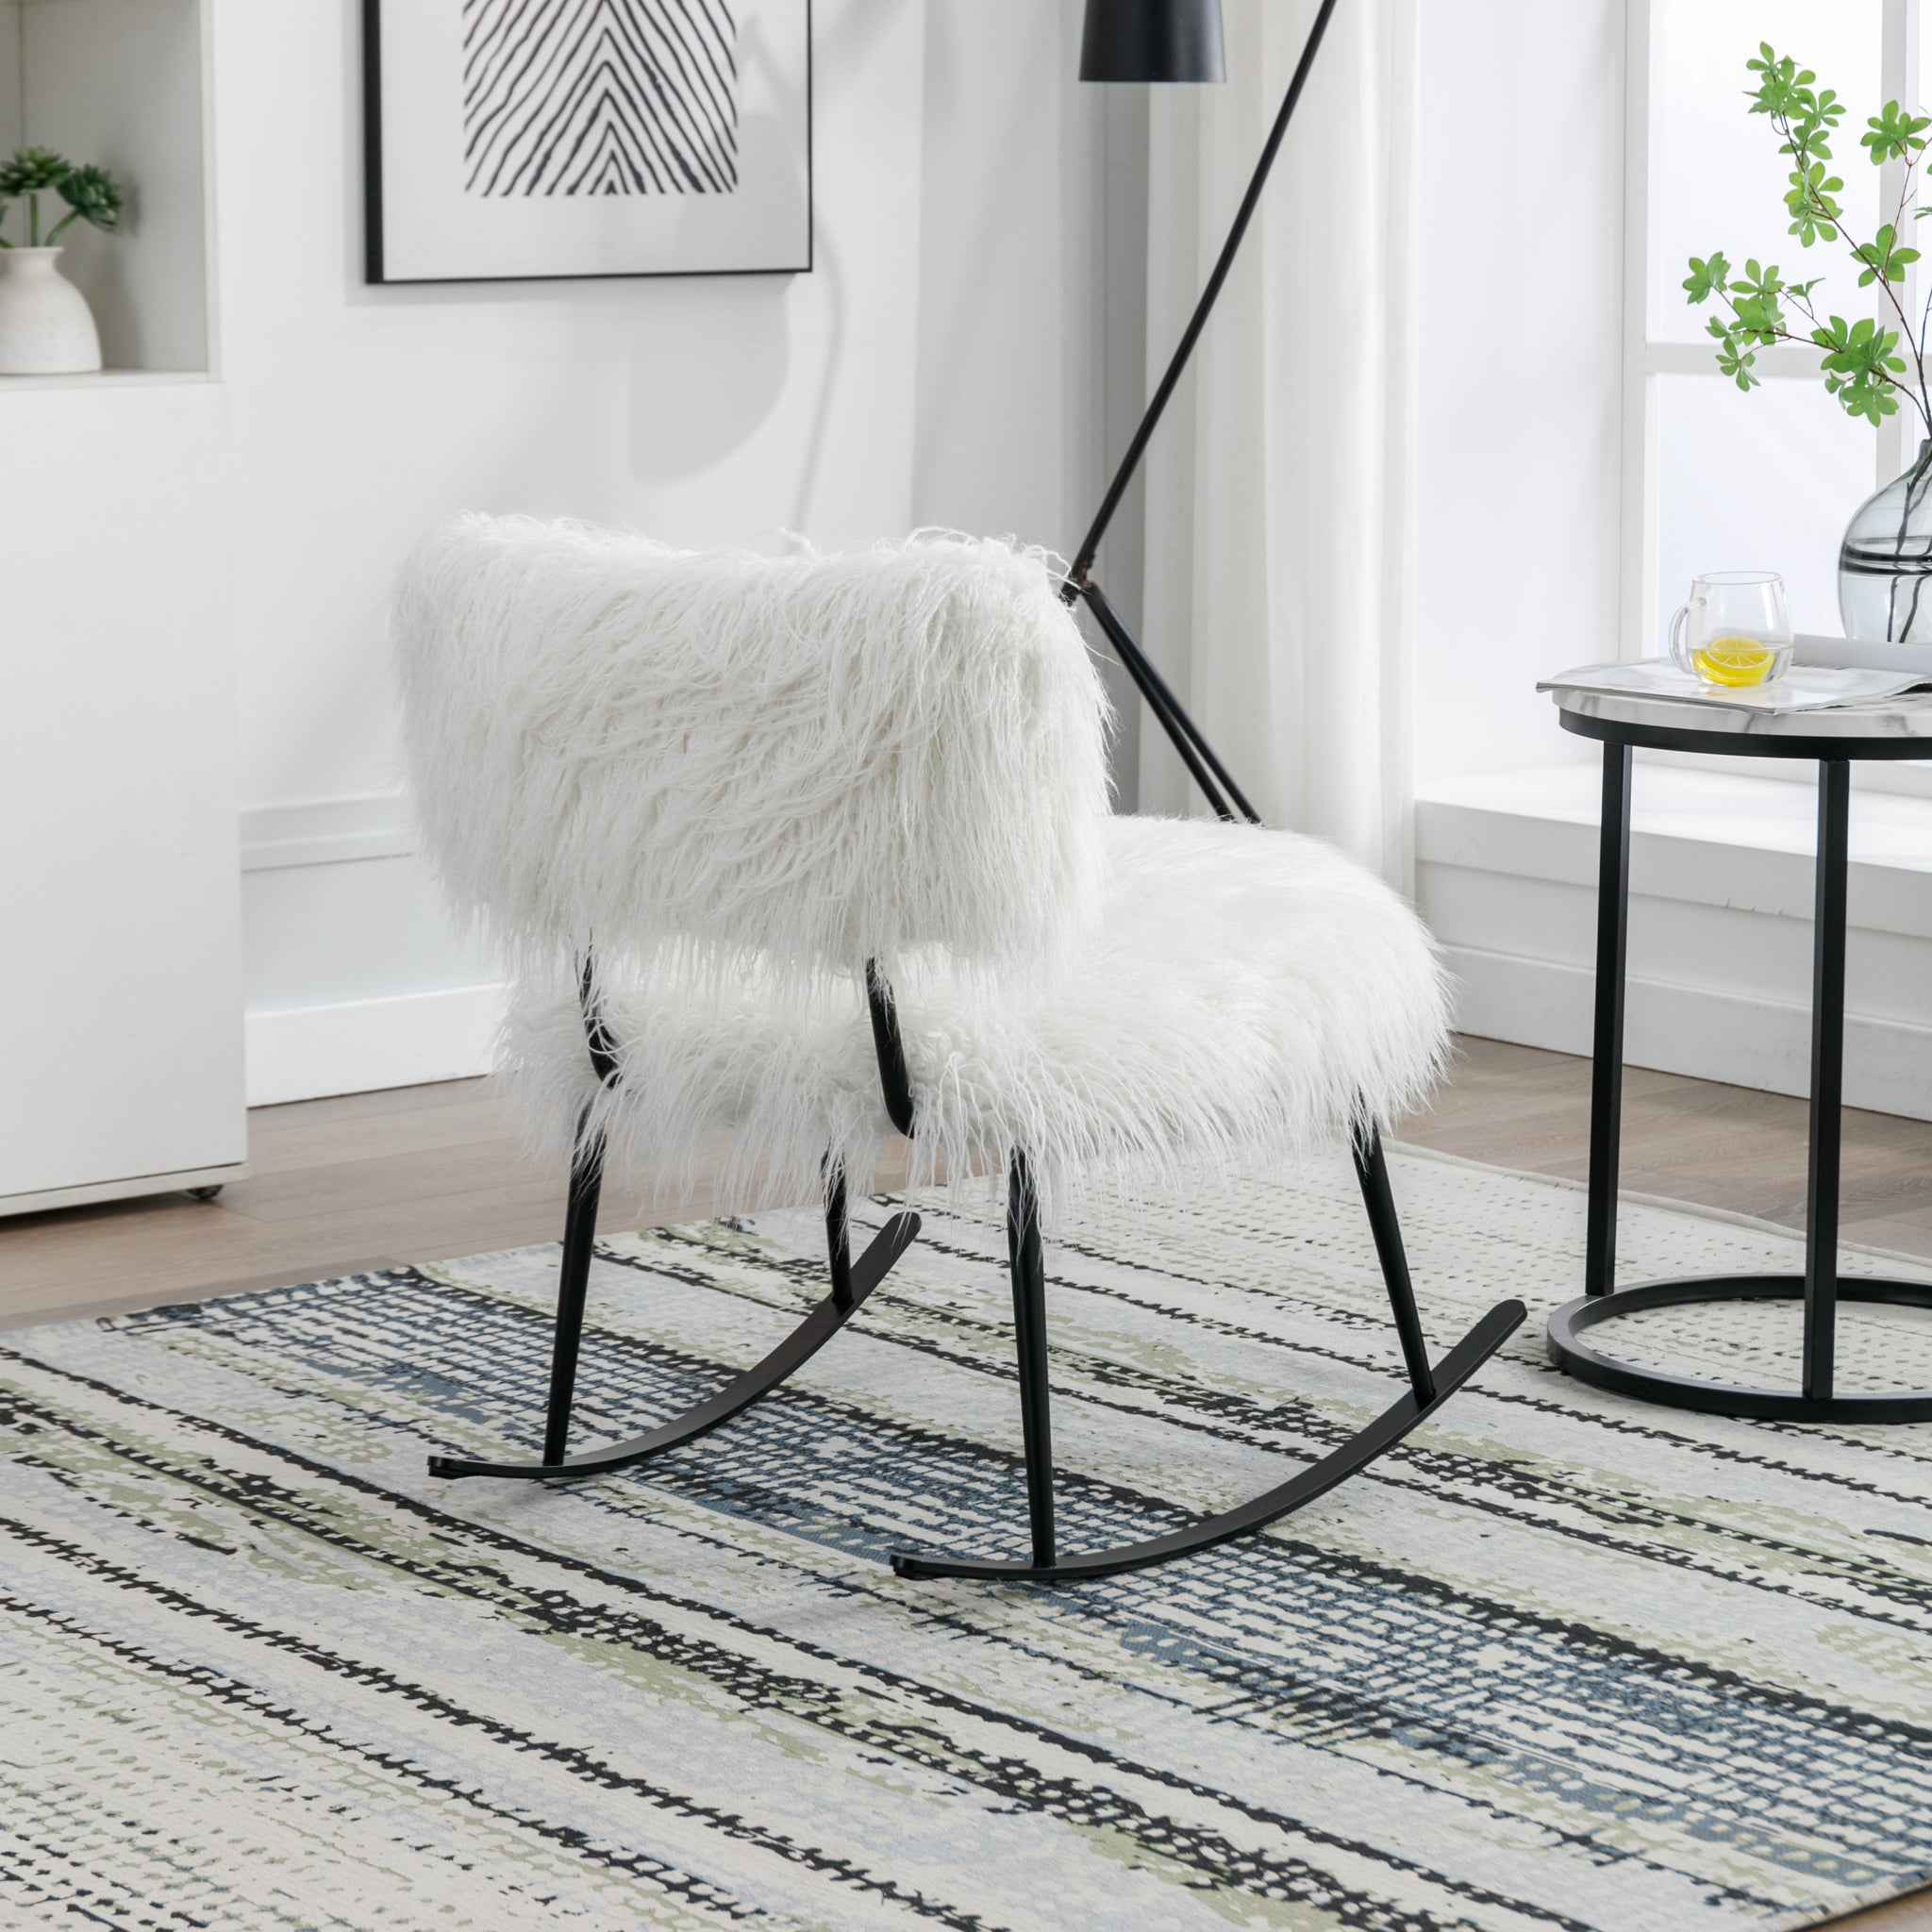 25.2'' Wide Faux Fur Plush Nursery Rocking Chair, Baby ivory-foam-faux fur